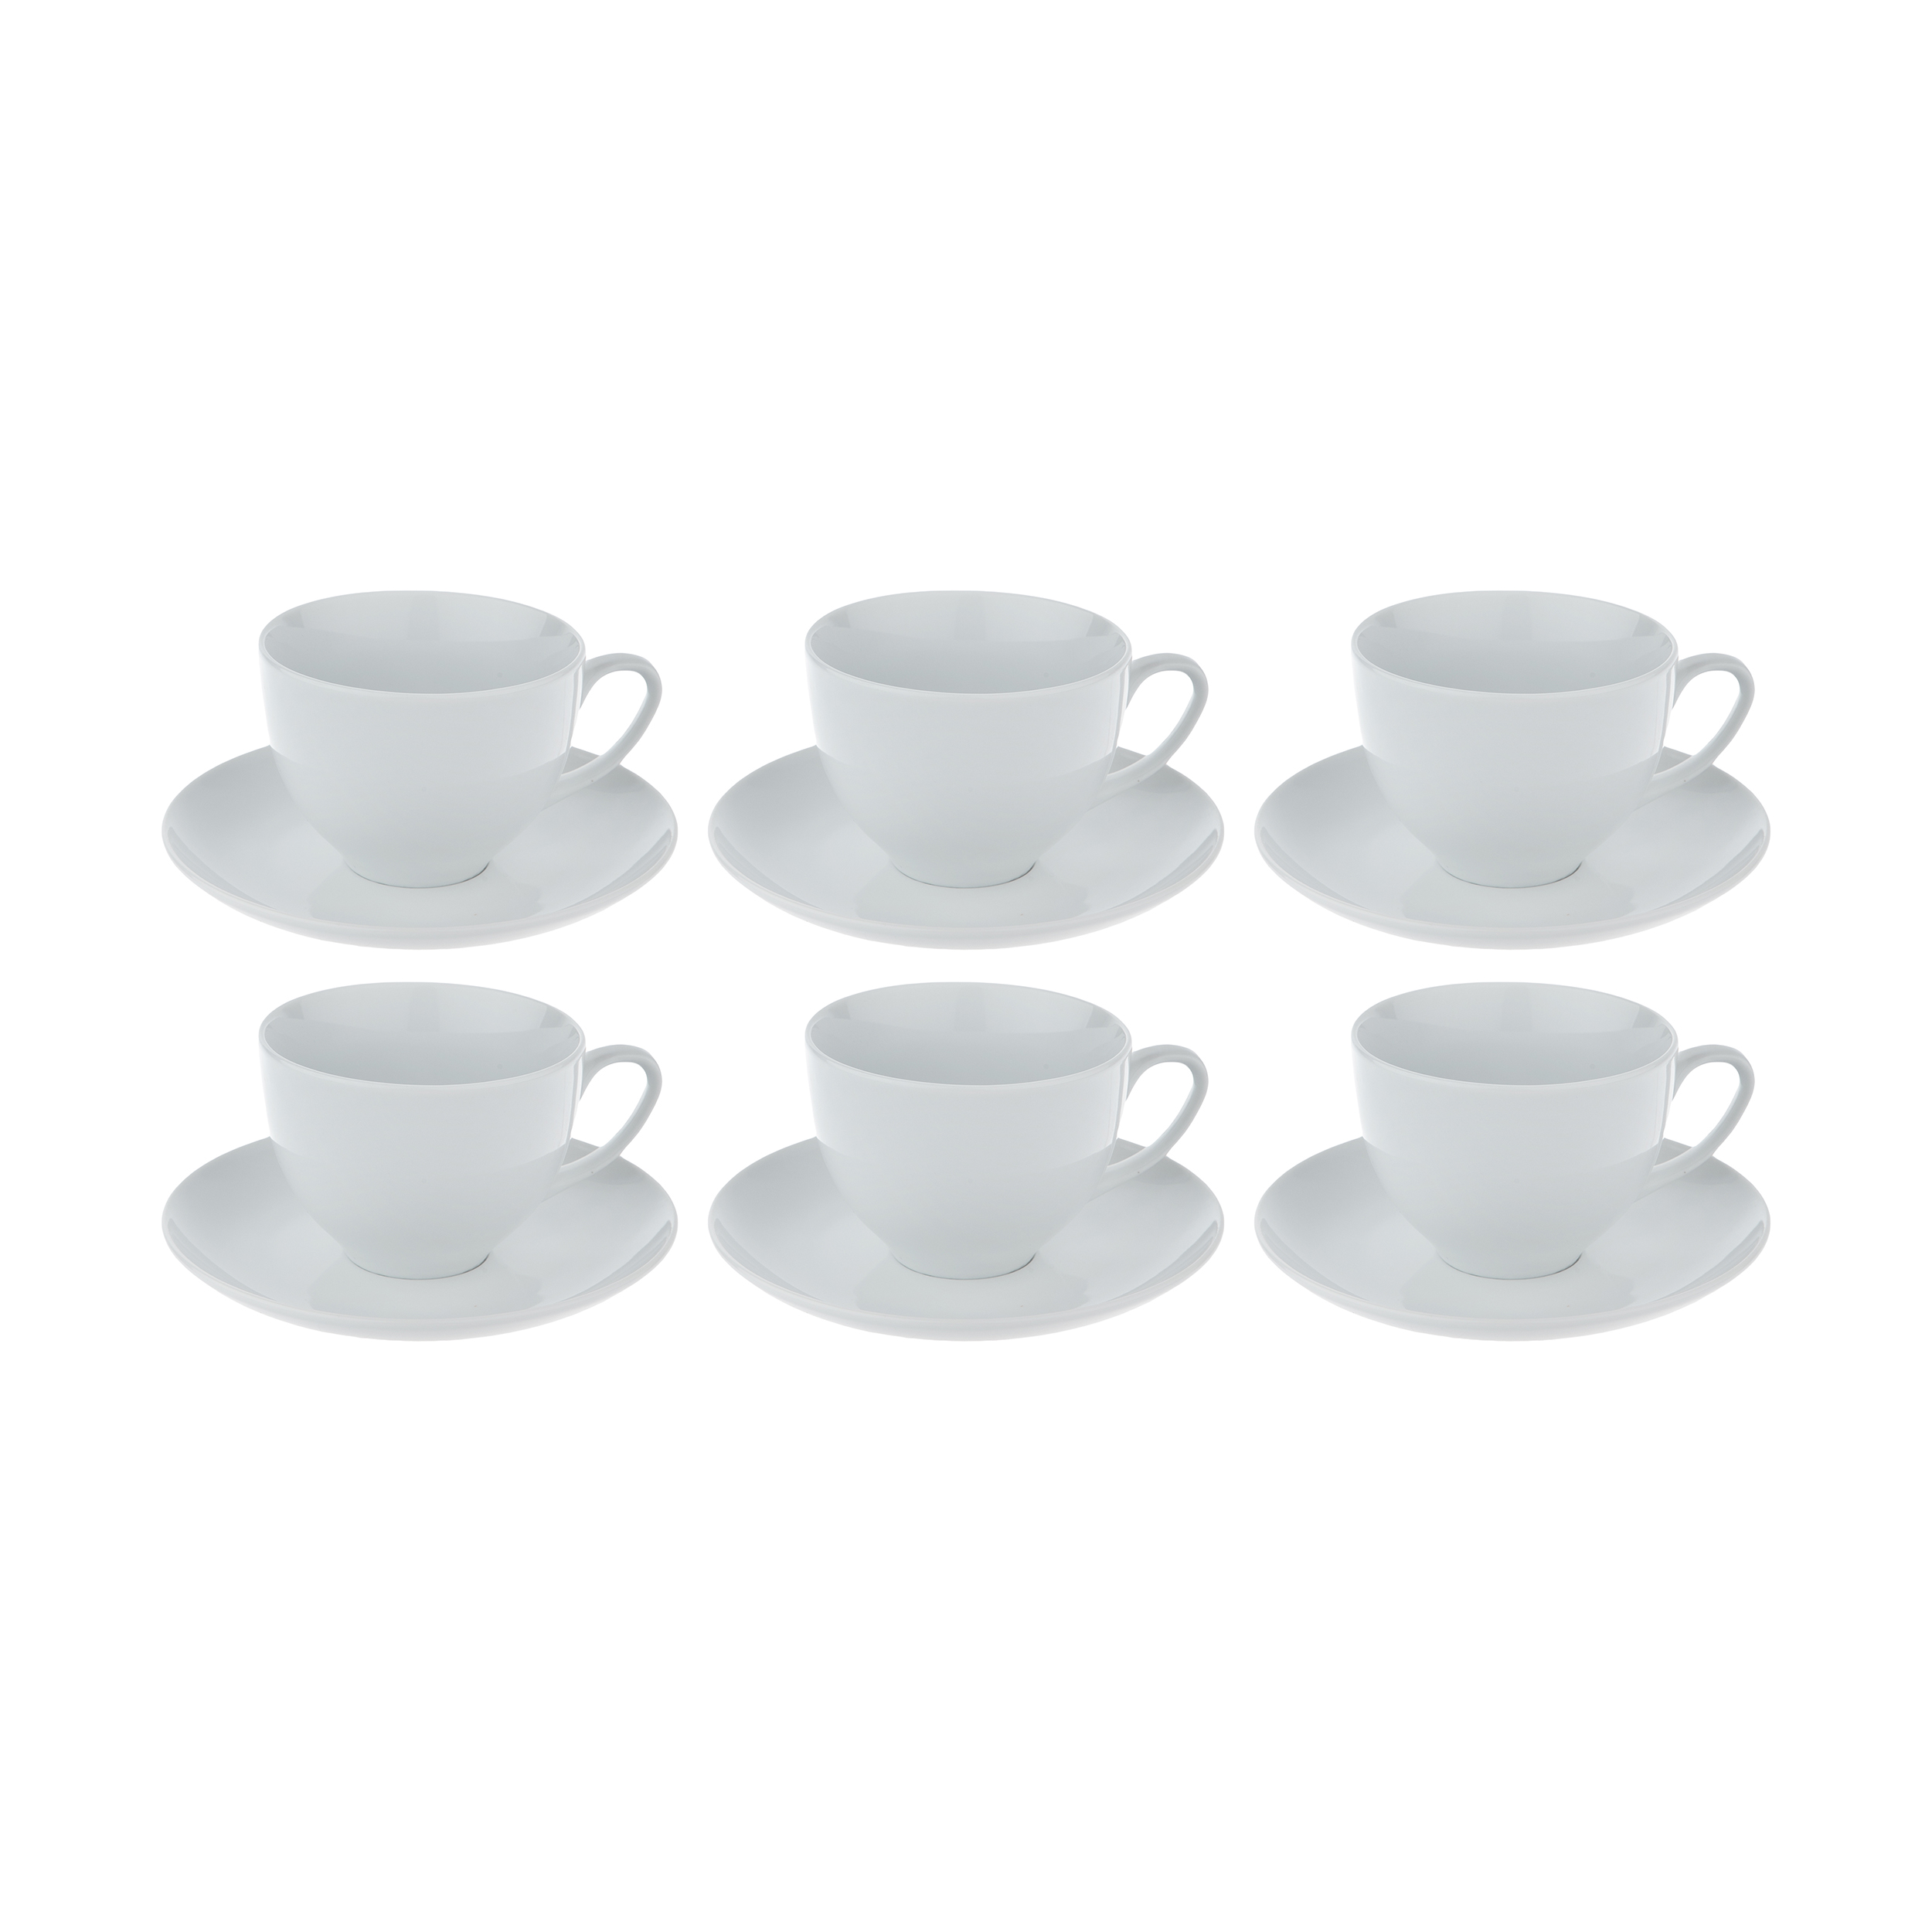 سرویس چای خوری 12 پارچه تقدیس سری کلاسیک کد 180